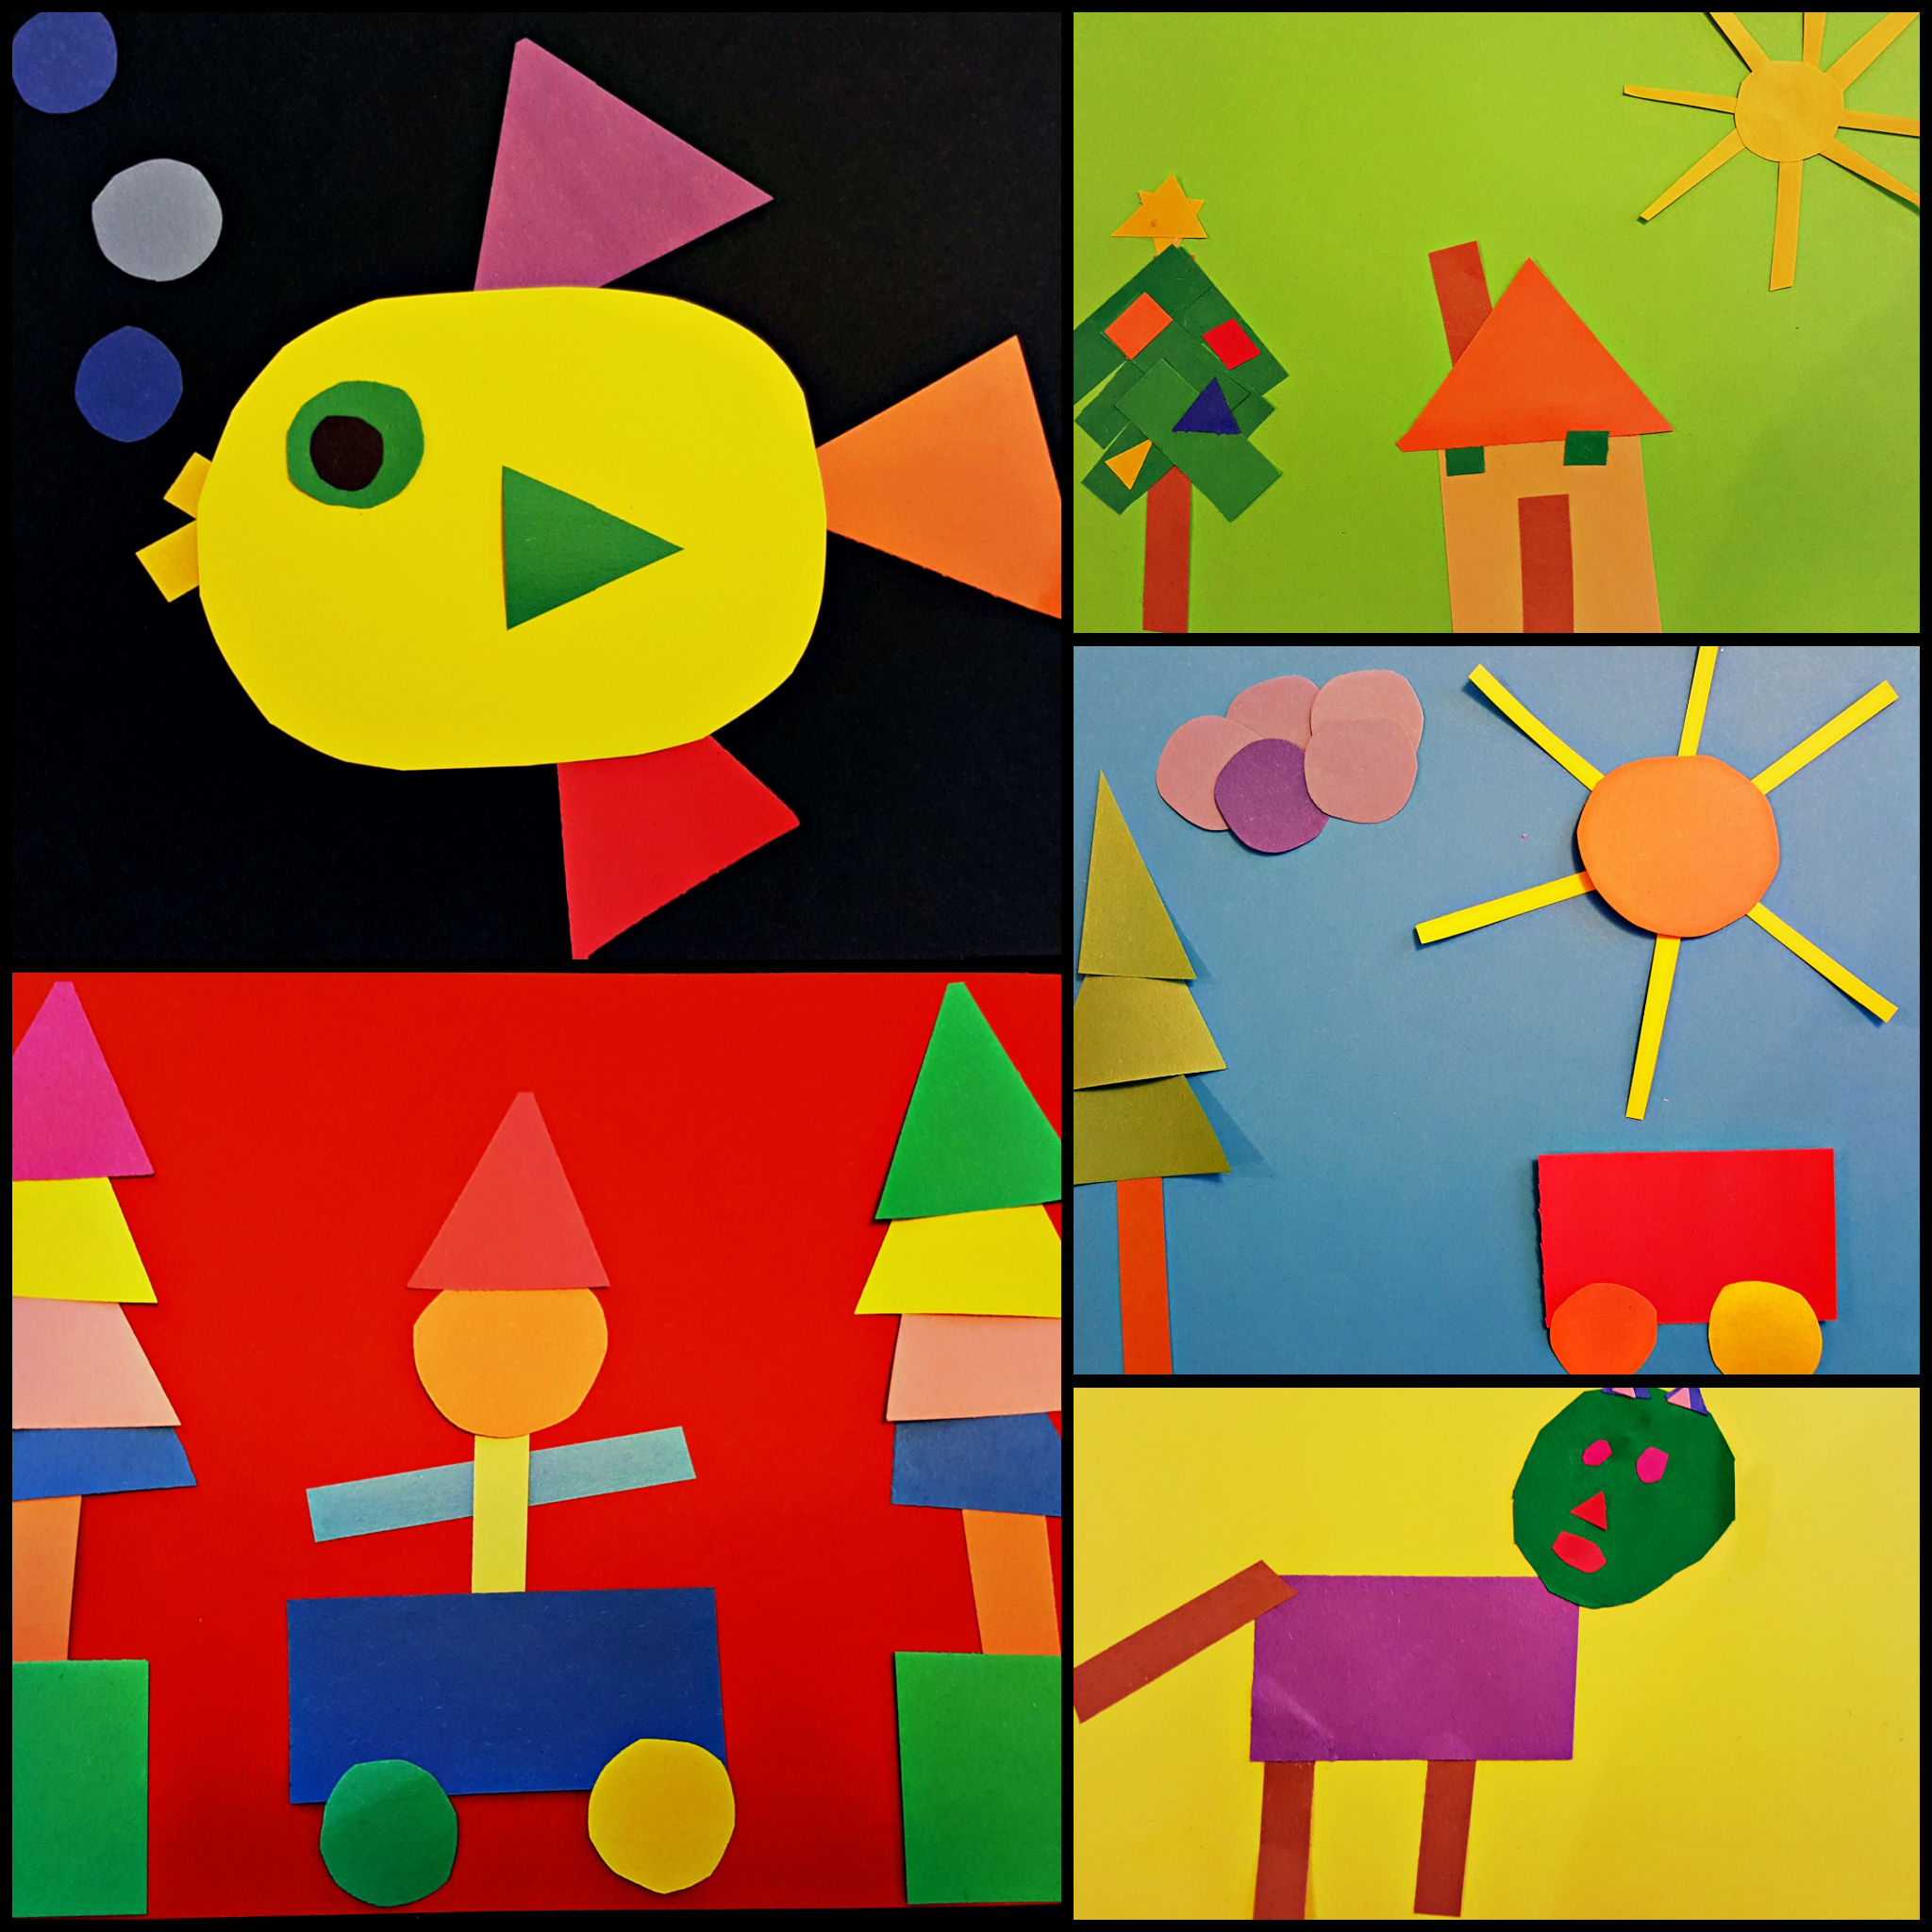 art-project-for-kids-shape-art-hands-on-teaching-ideas-kindergarten-adventures